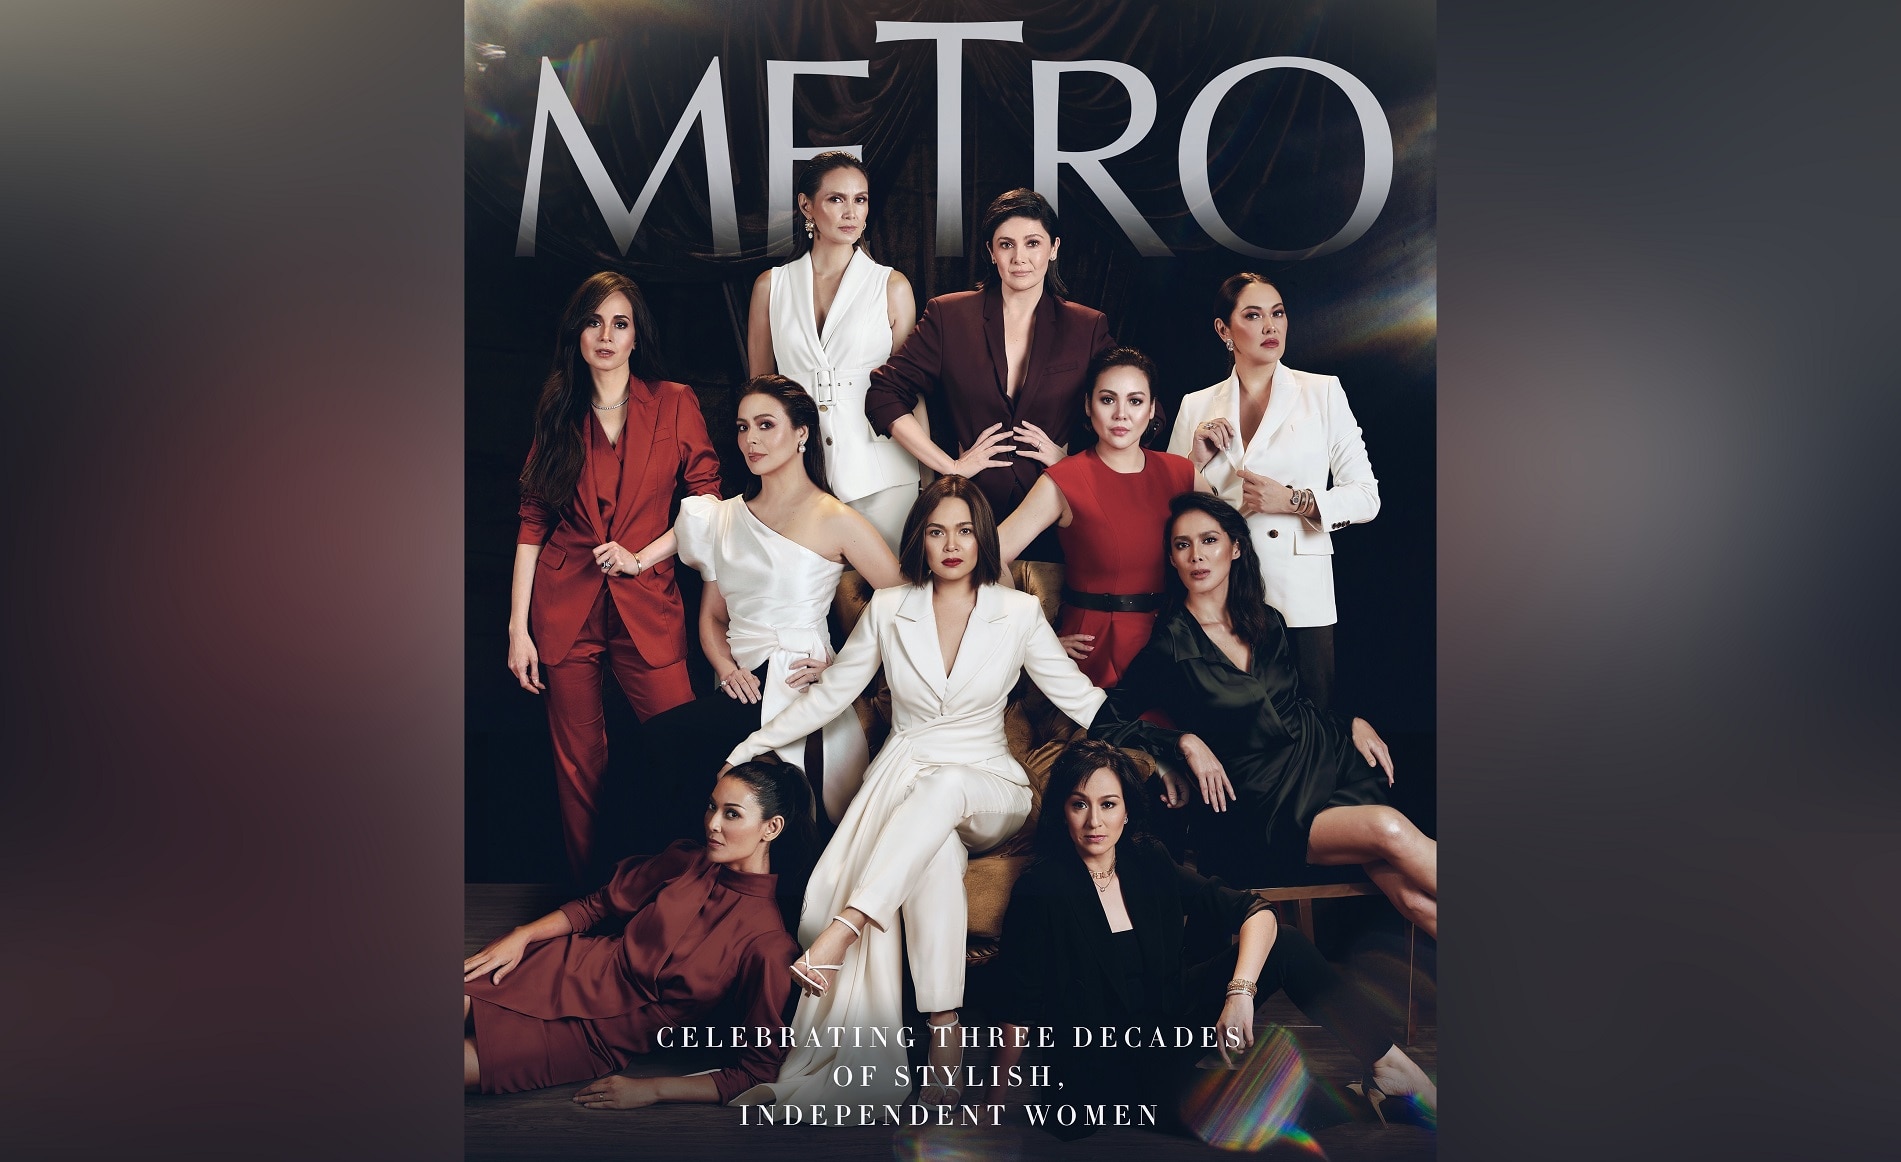 Metro celebrates 30 years of honoring stylish, independent women